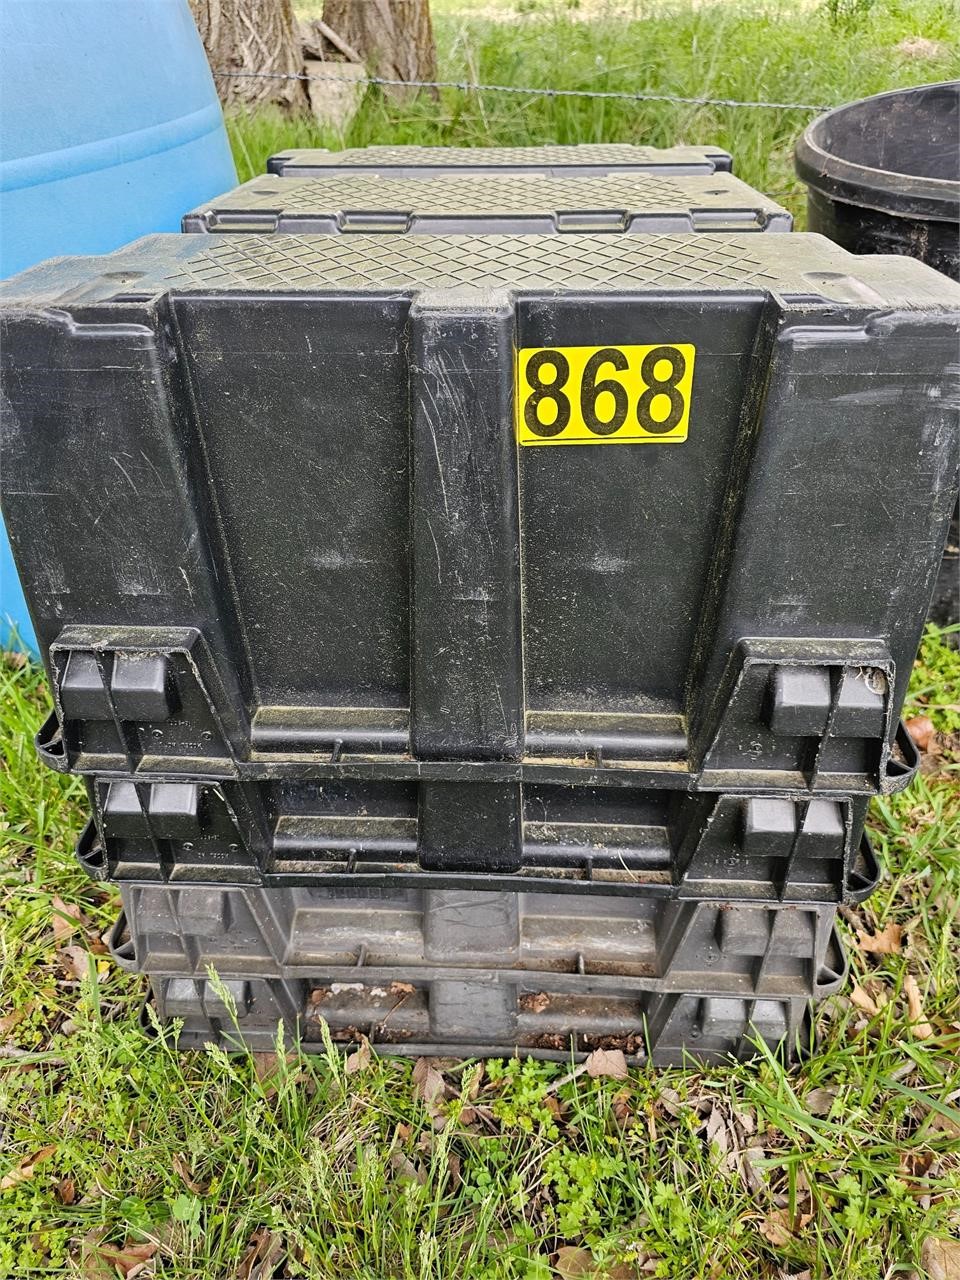 4- Plastic crates